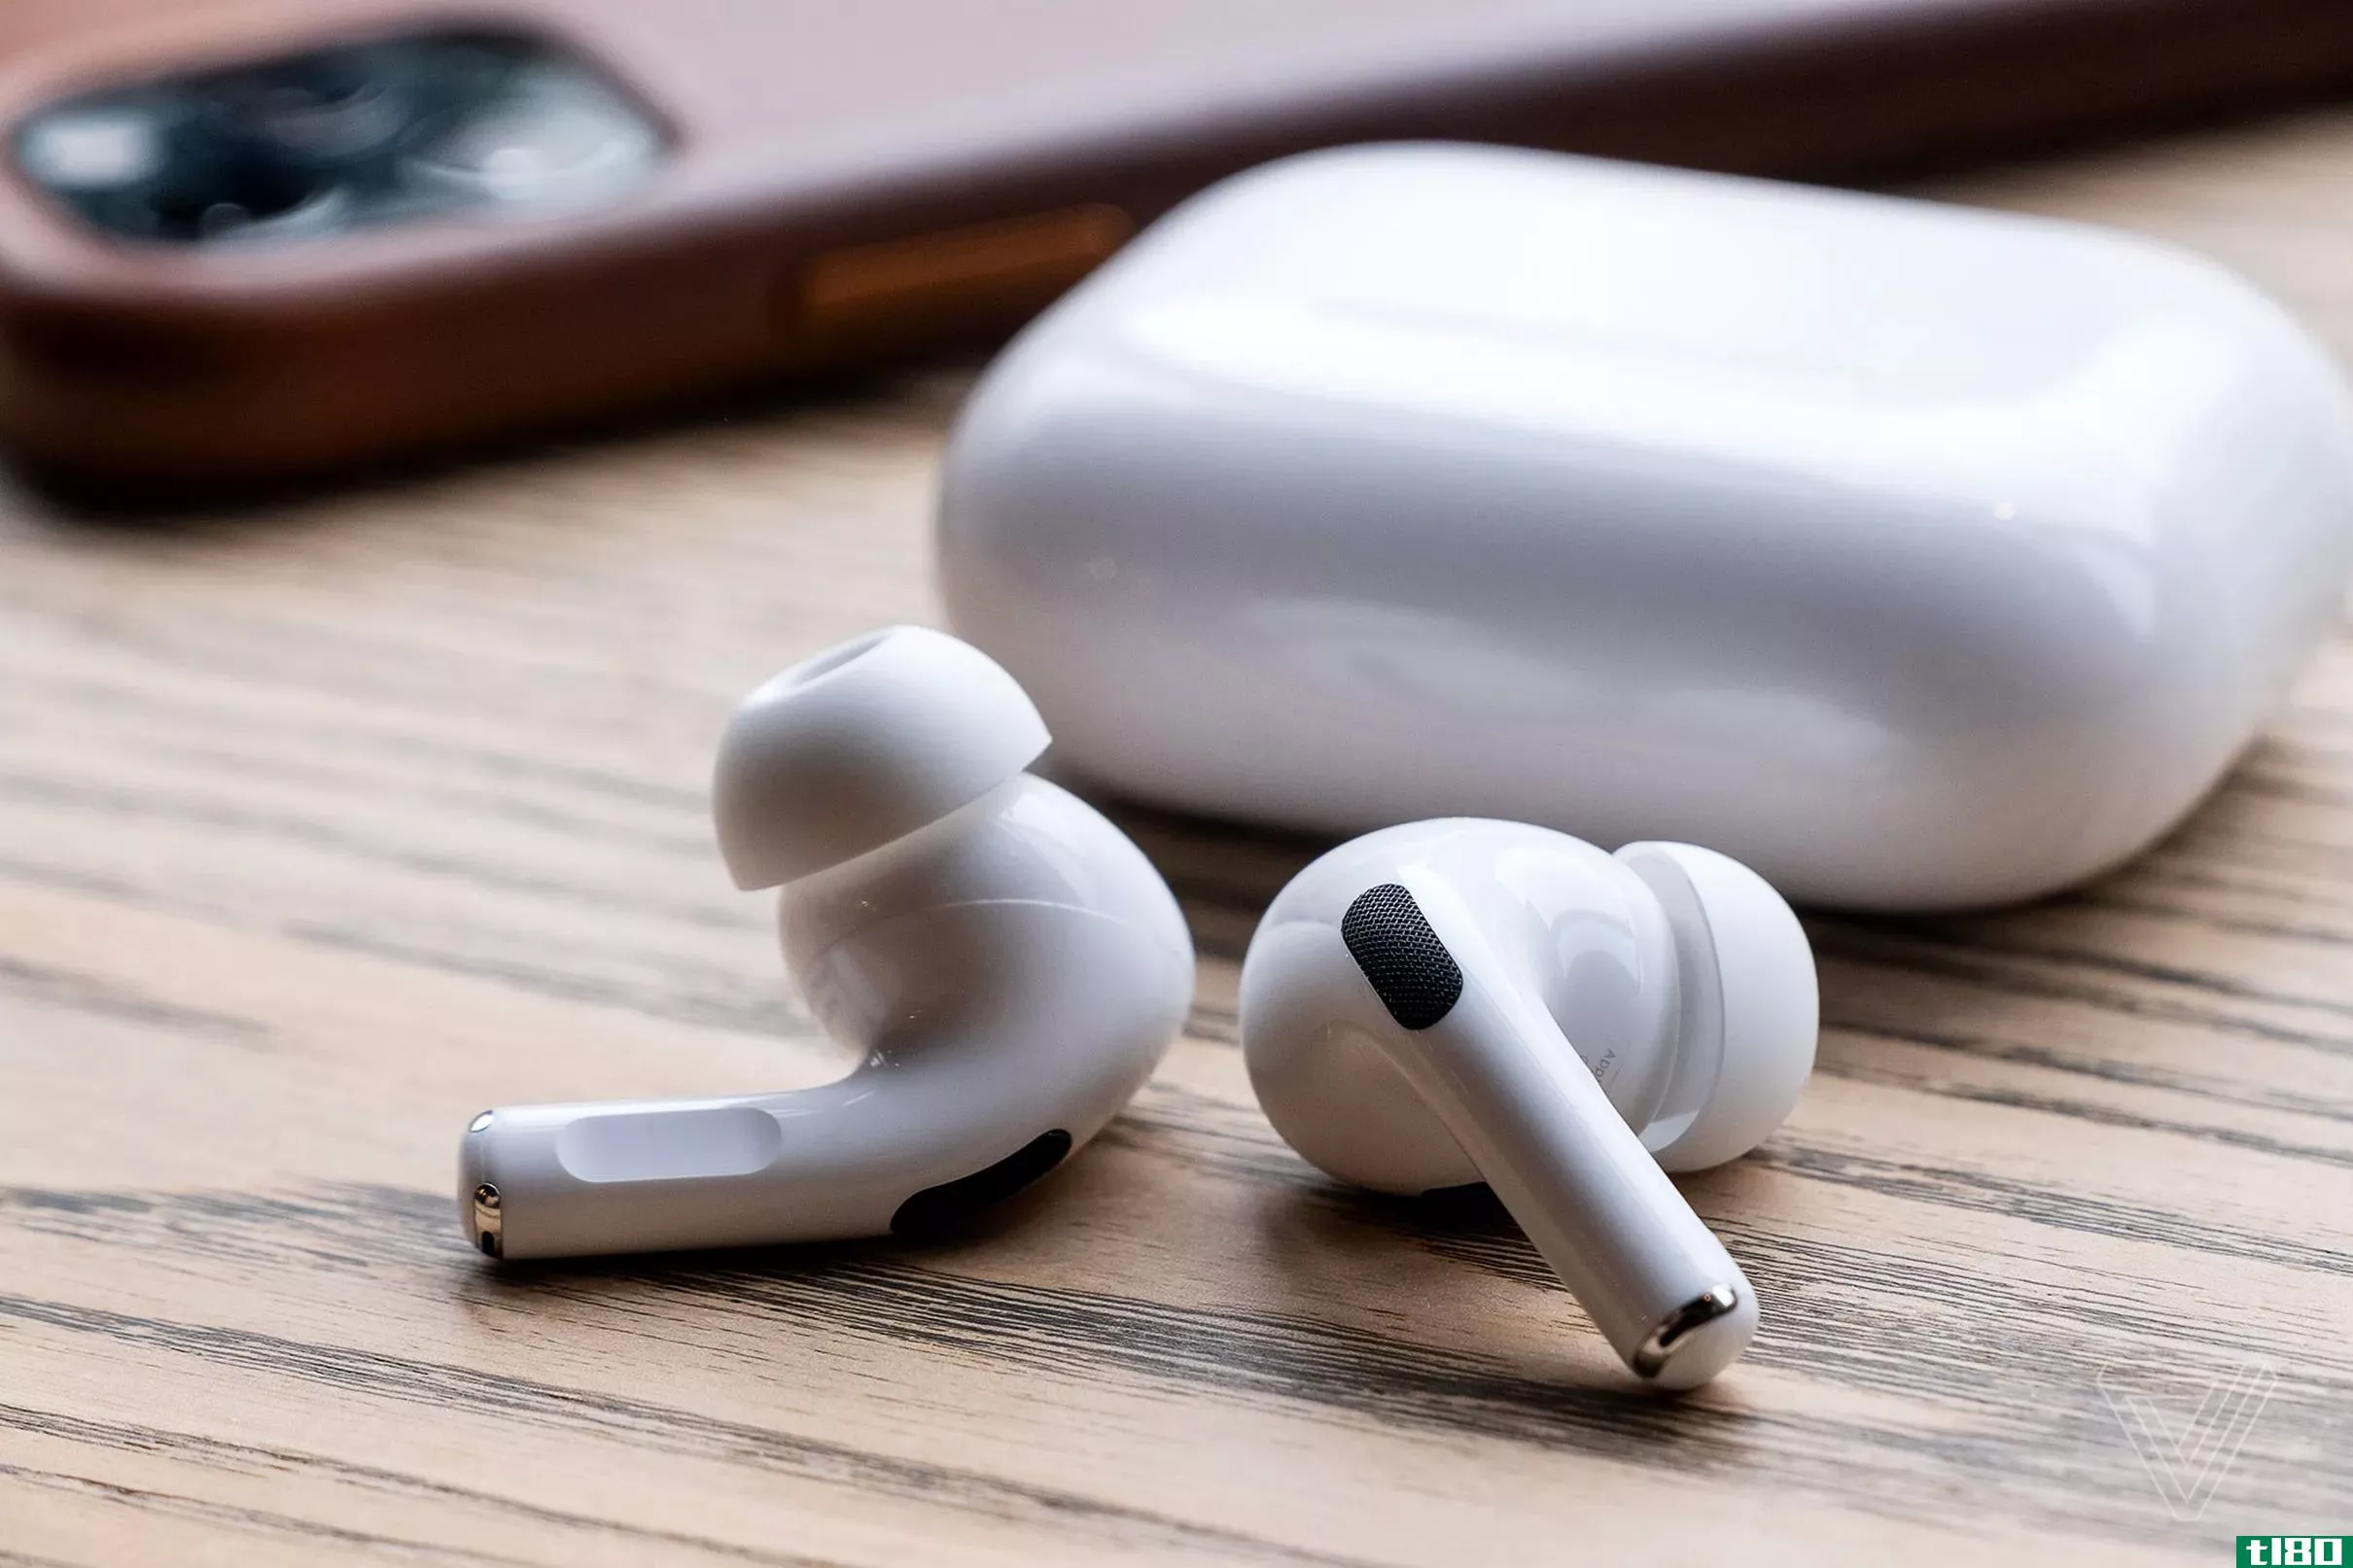 苹果将免费更换airpods pro，以消除错误的噪音、静电或噼啪声